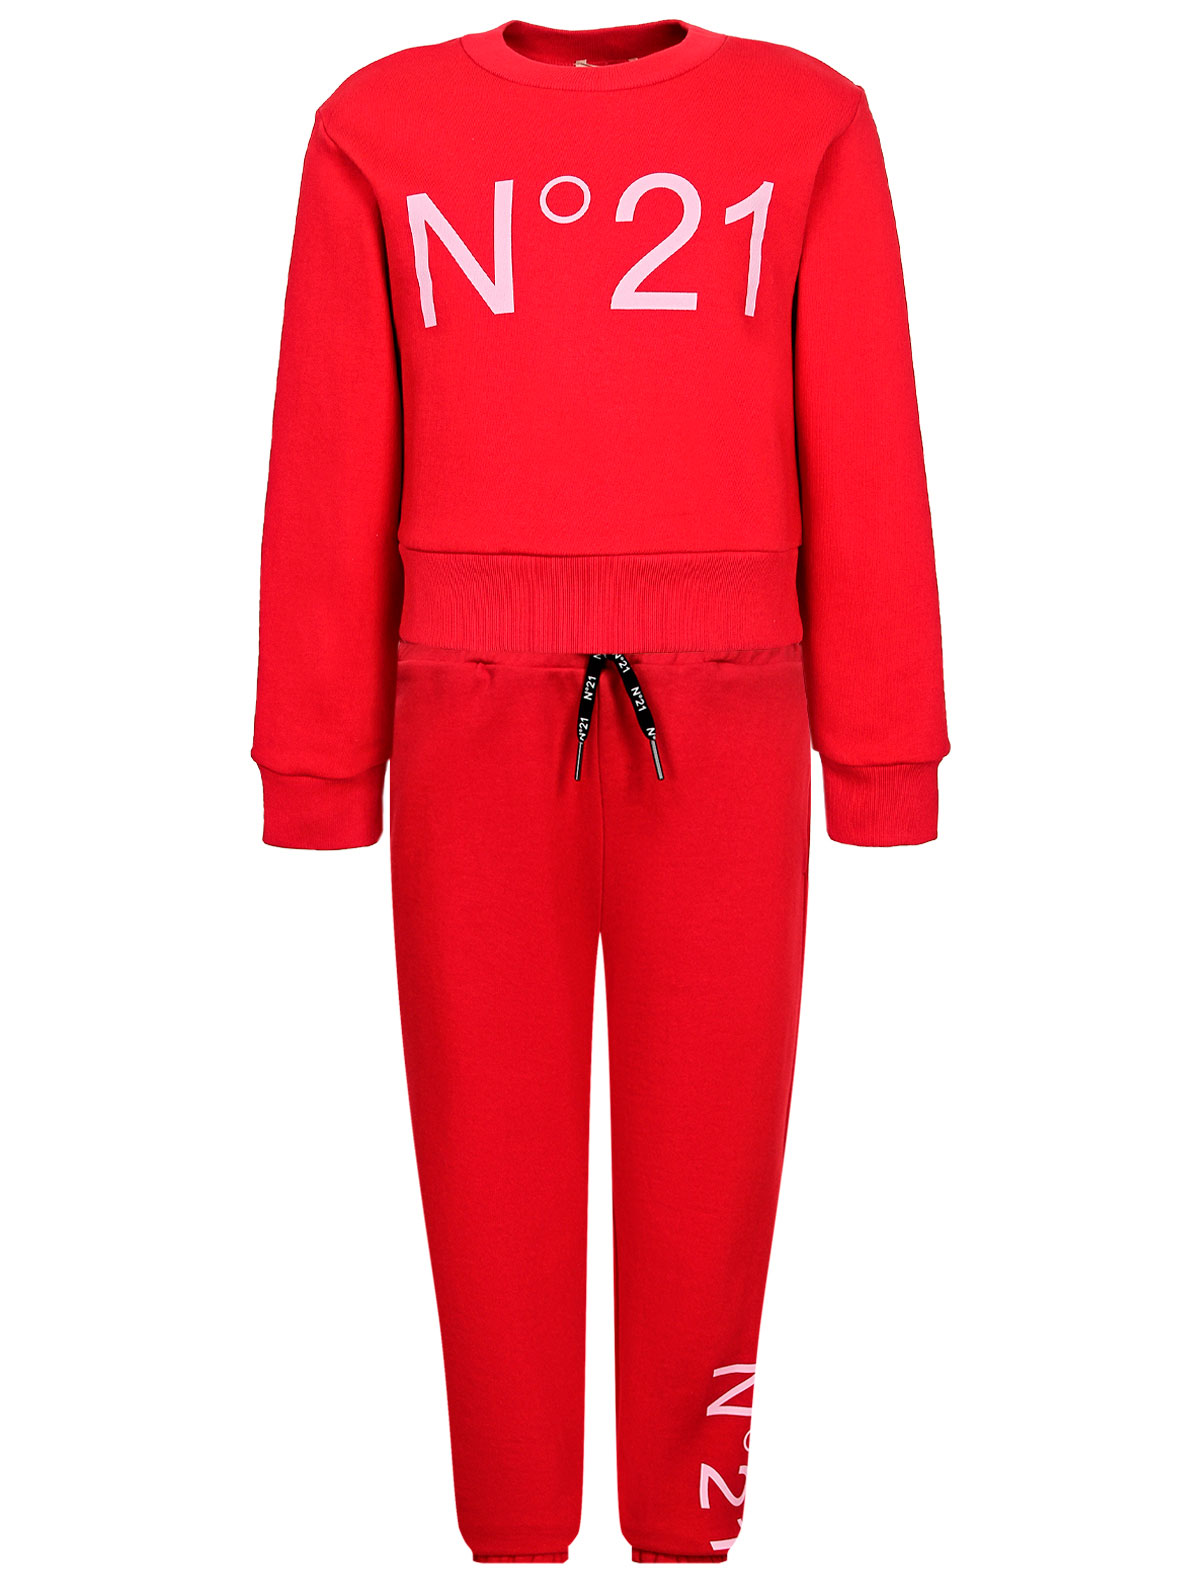 спортивный костюм n21 для девочки, красный